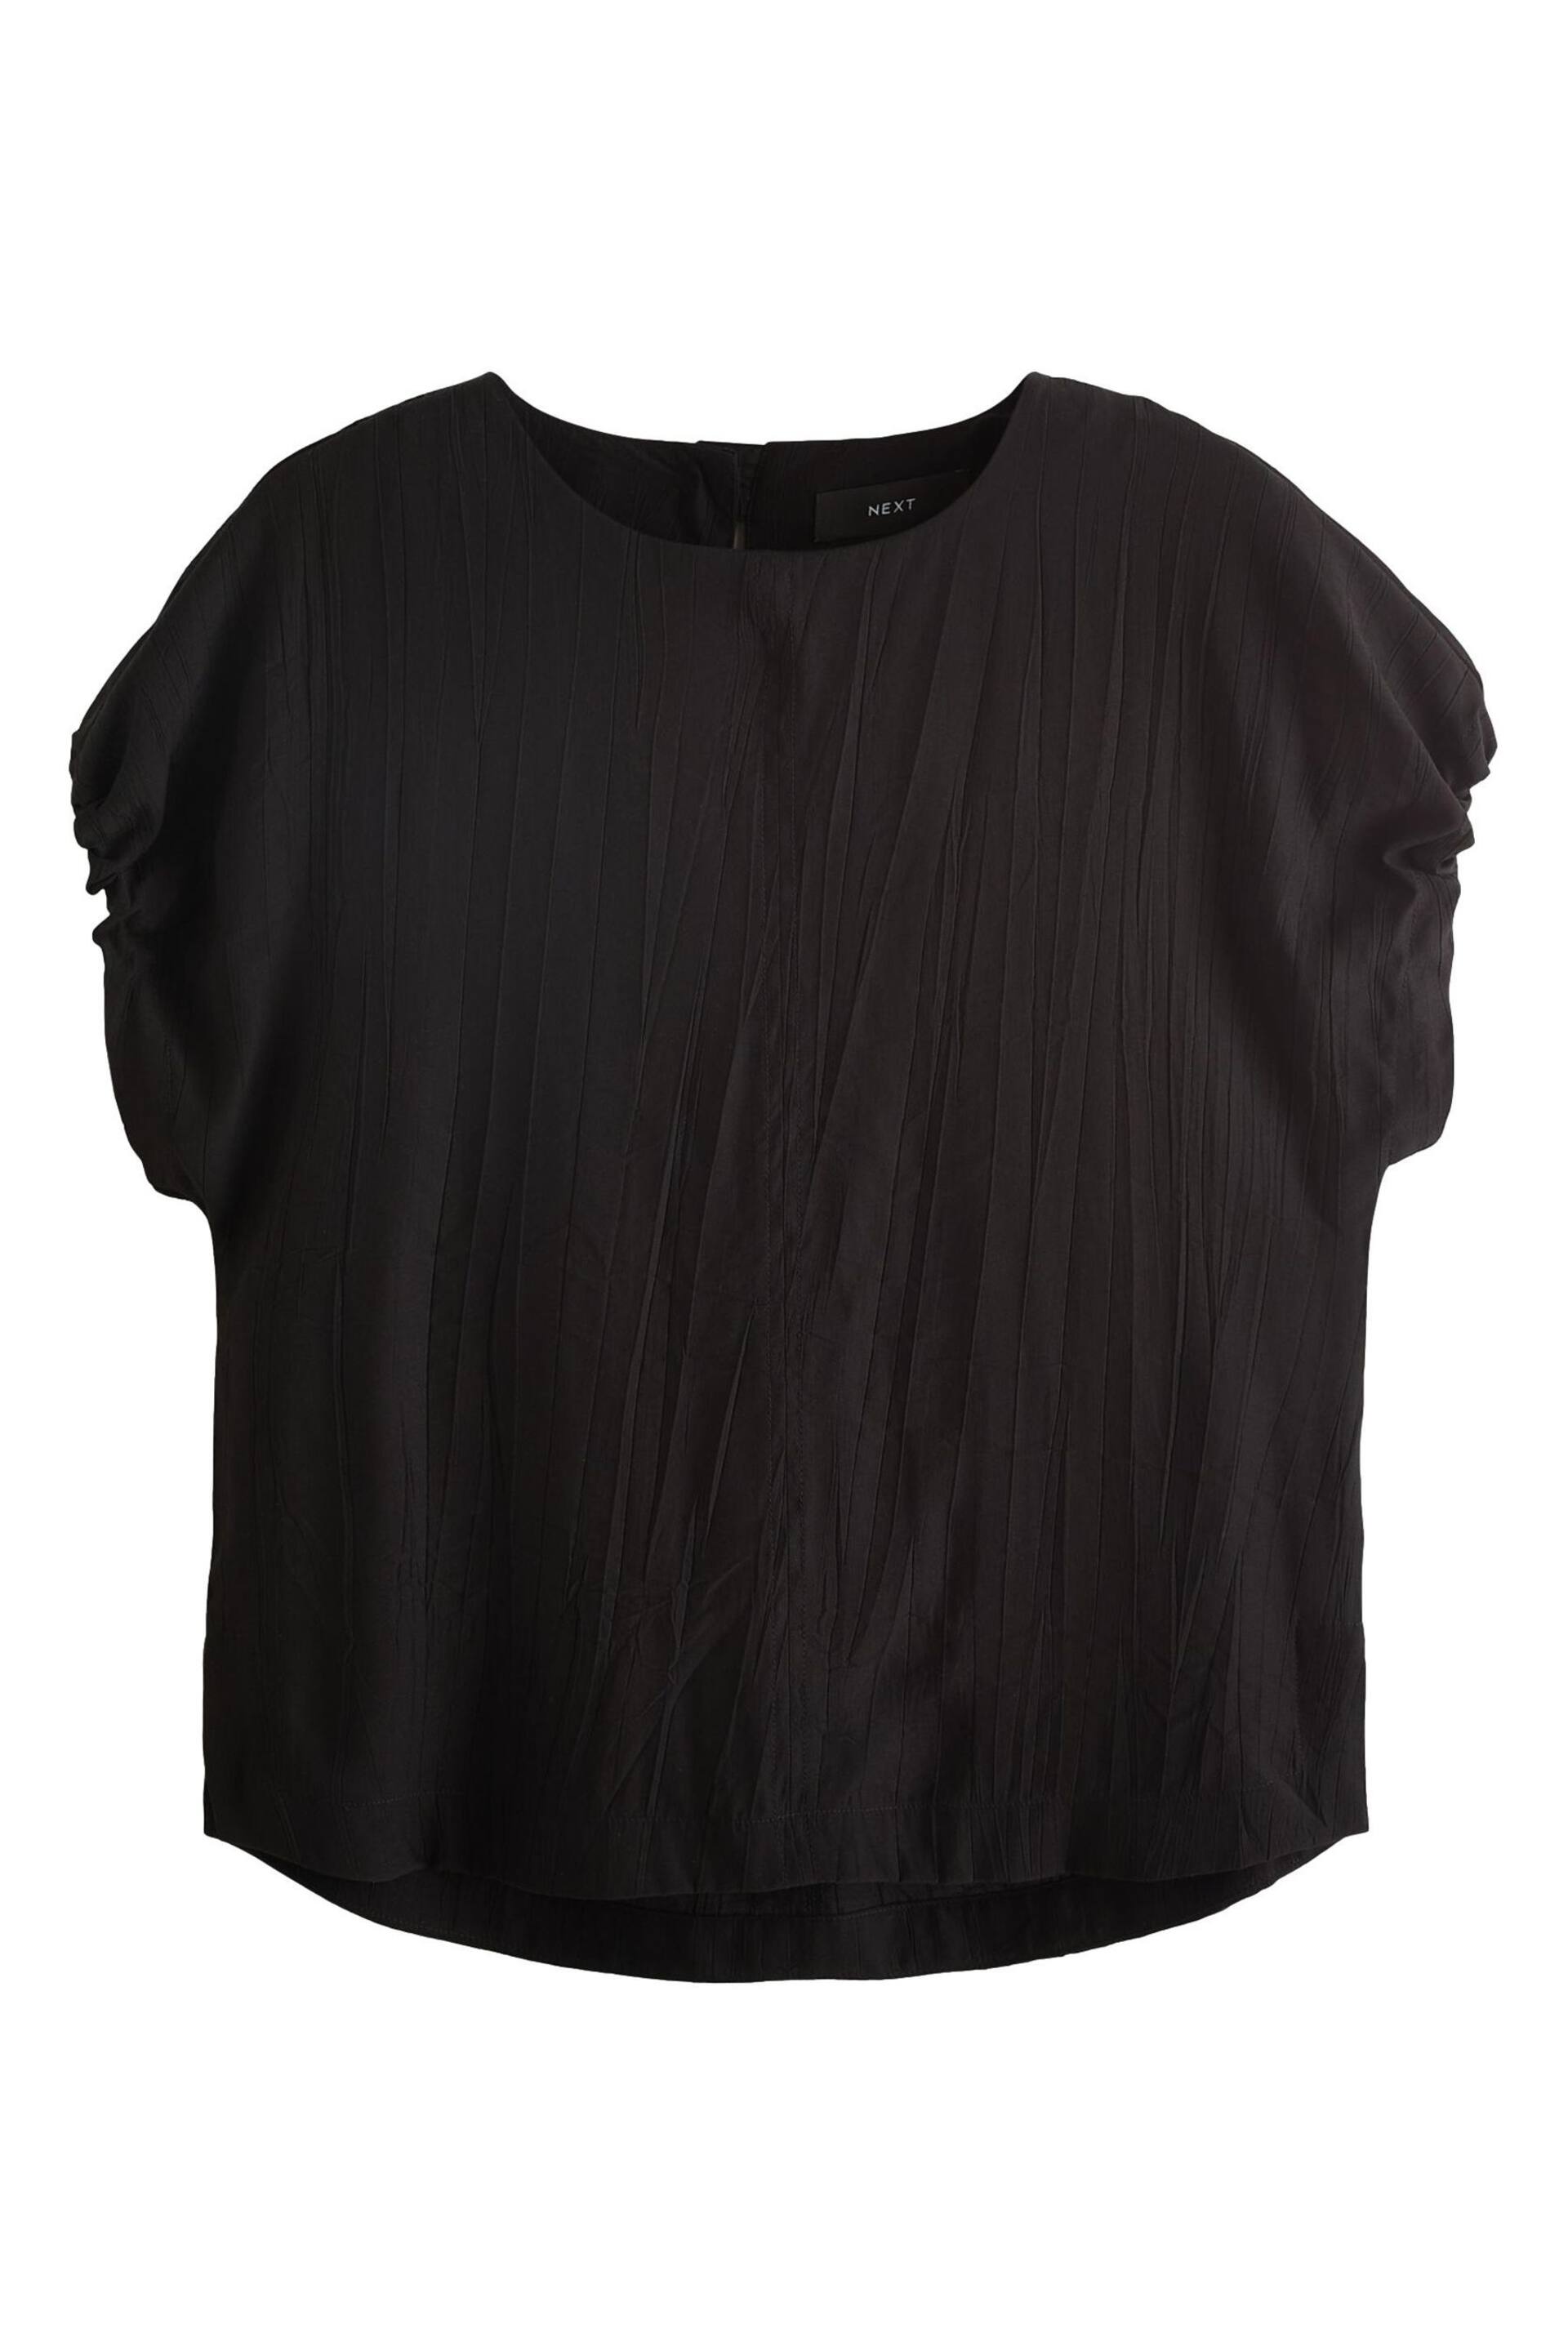 Black Gathered Short Sleeve Textured Boxy T-Shirt - Image 5 of 6